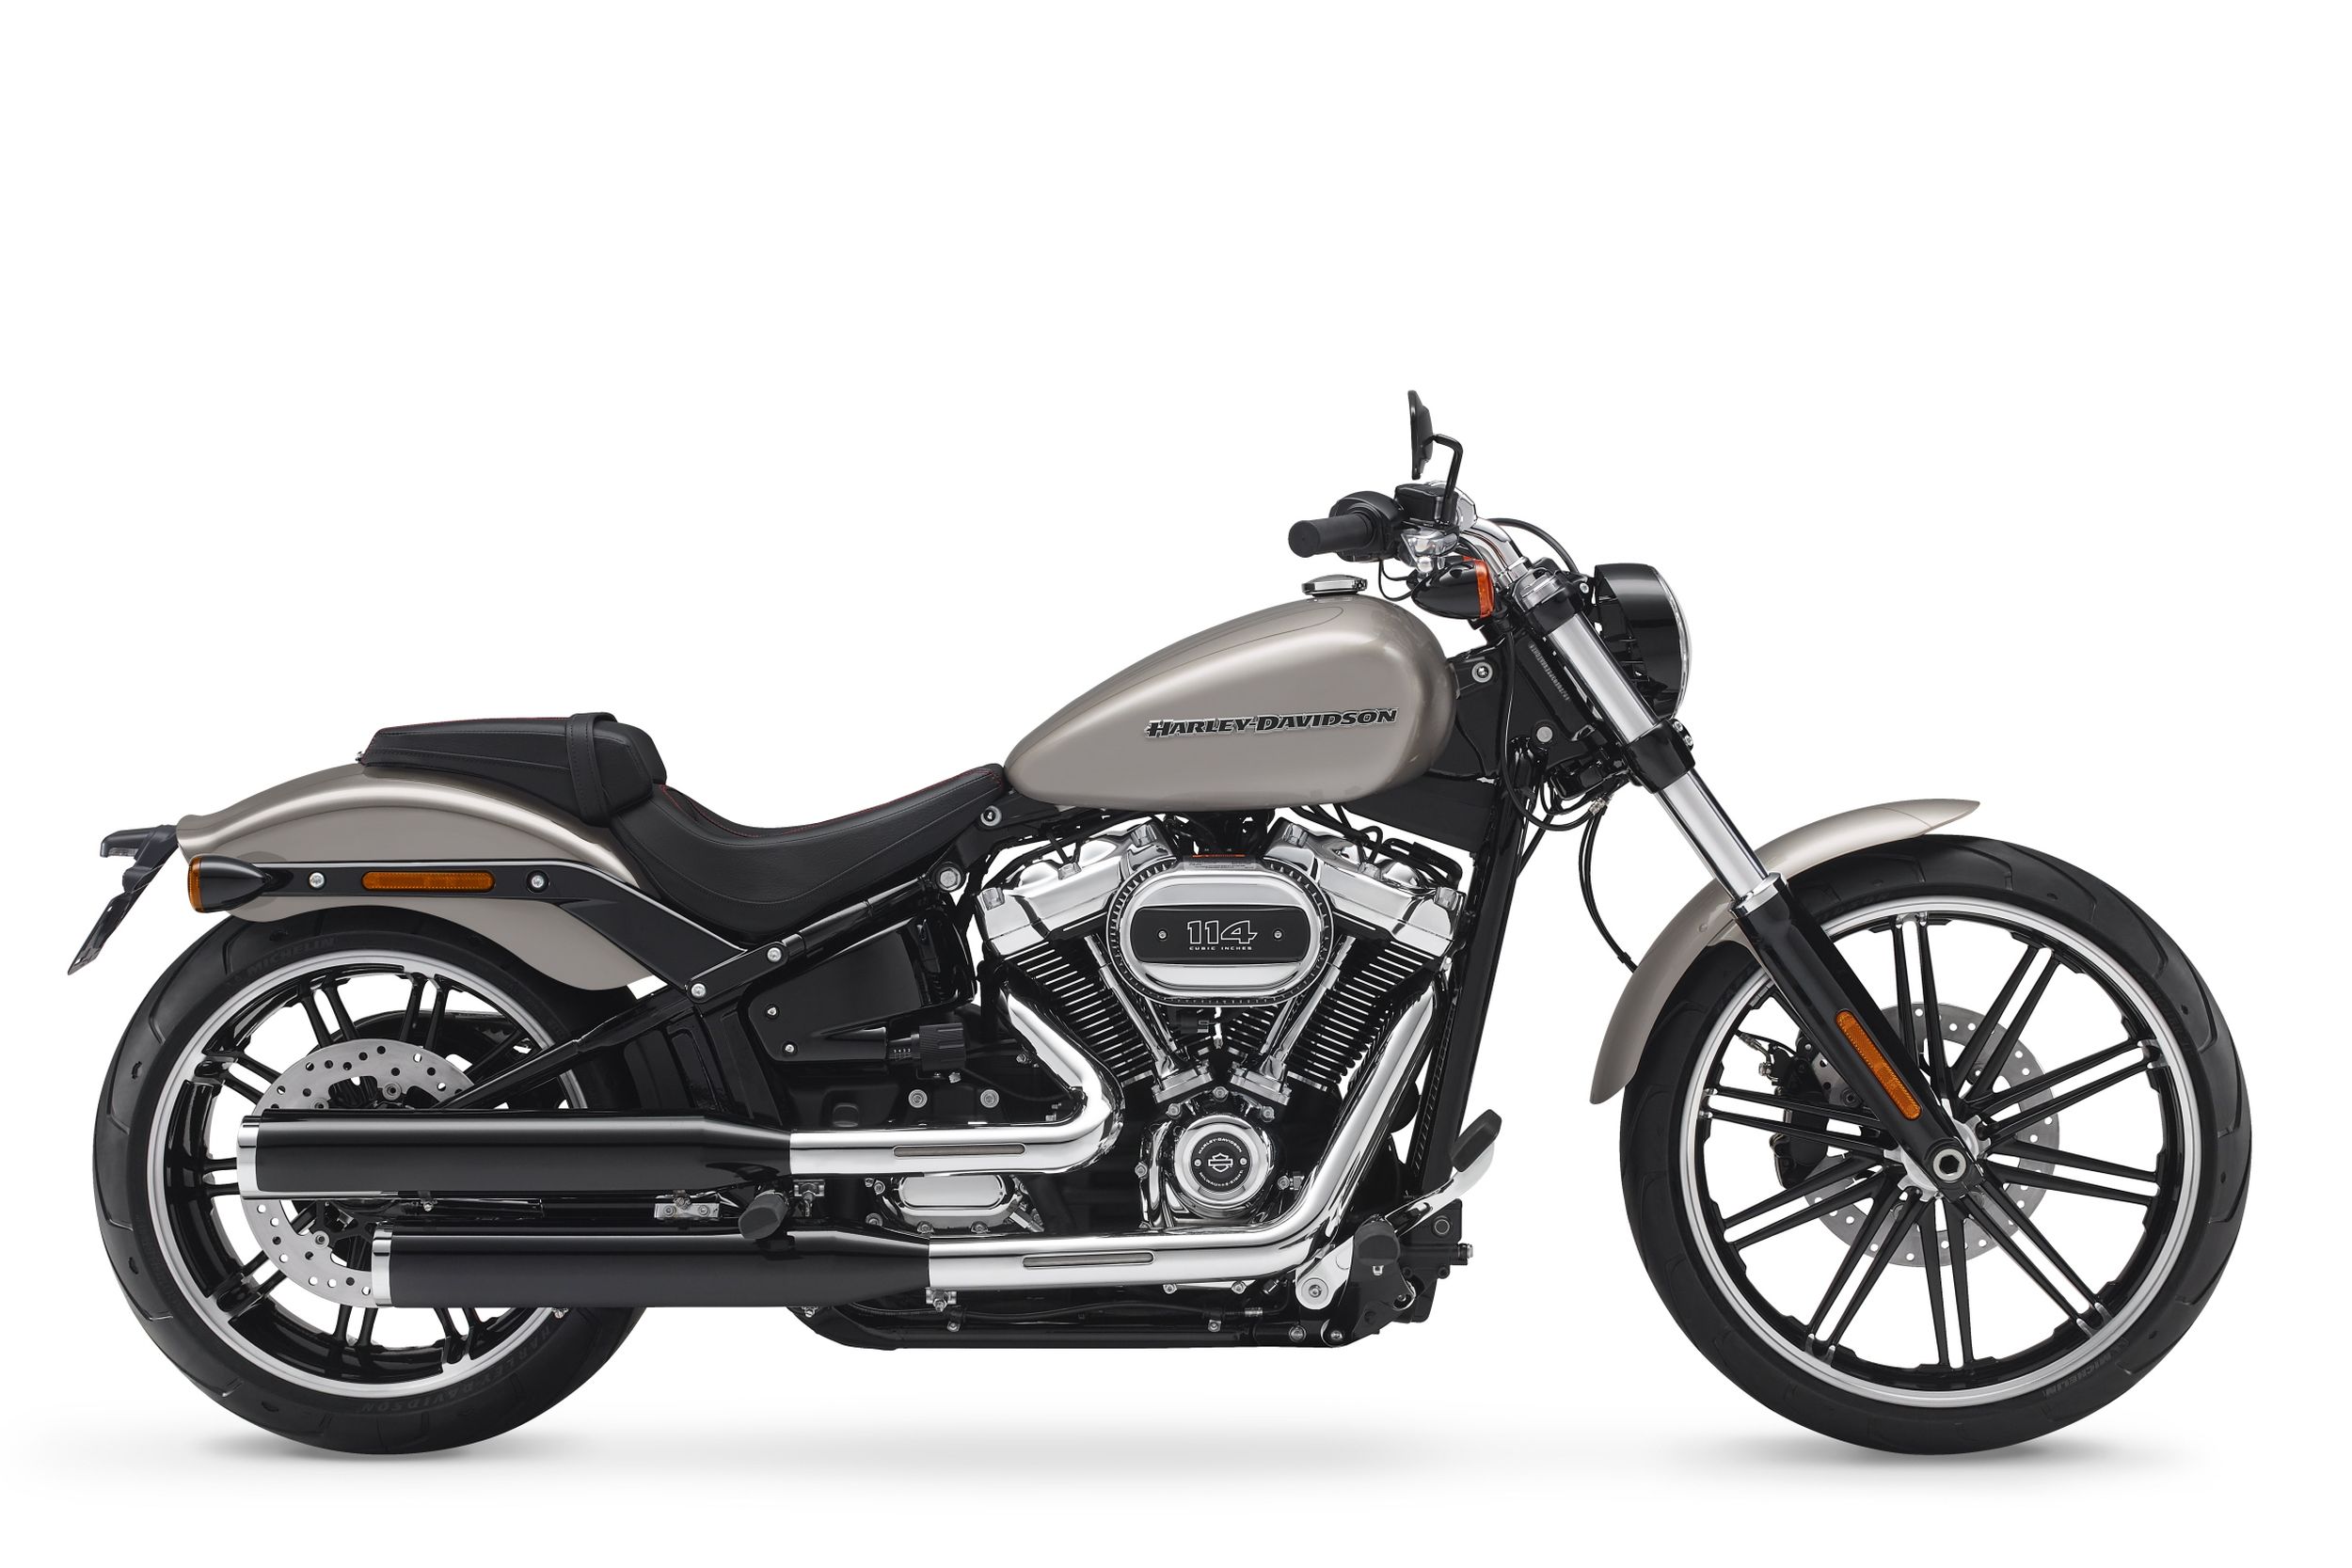 Motorrad Vergleich Harley Davidson Softail Breakout 114 Fxbrs 2021 Vs Harley Davidson Softail Breakout 114 Fxbrs 2018